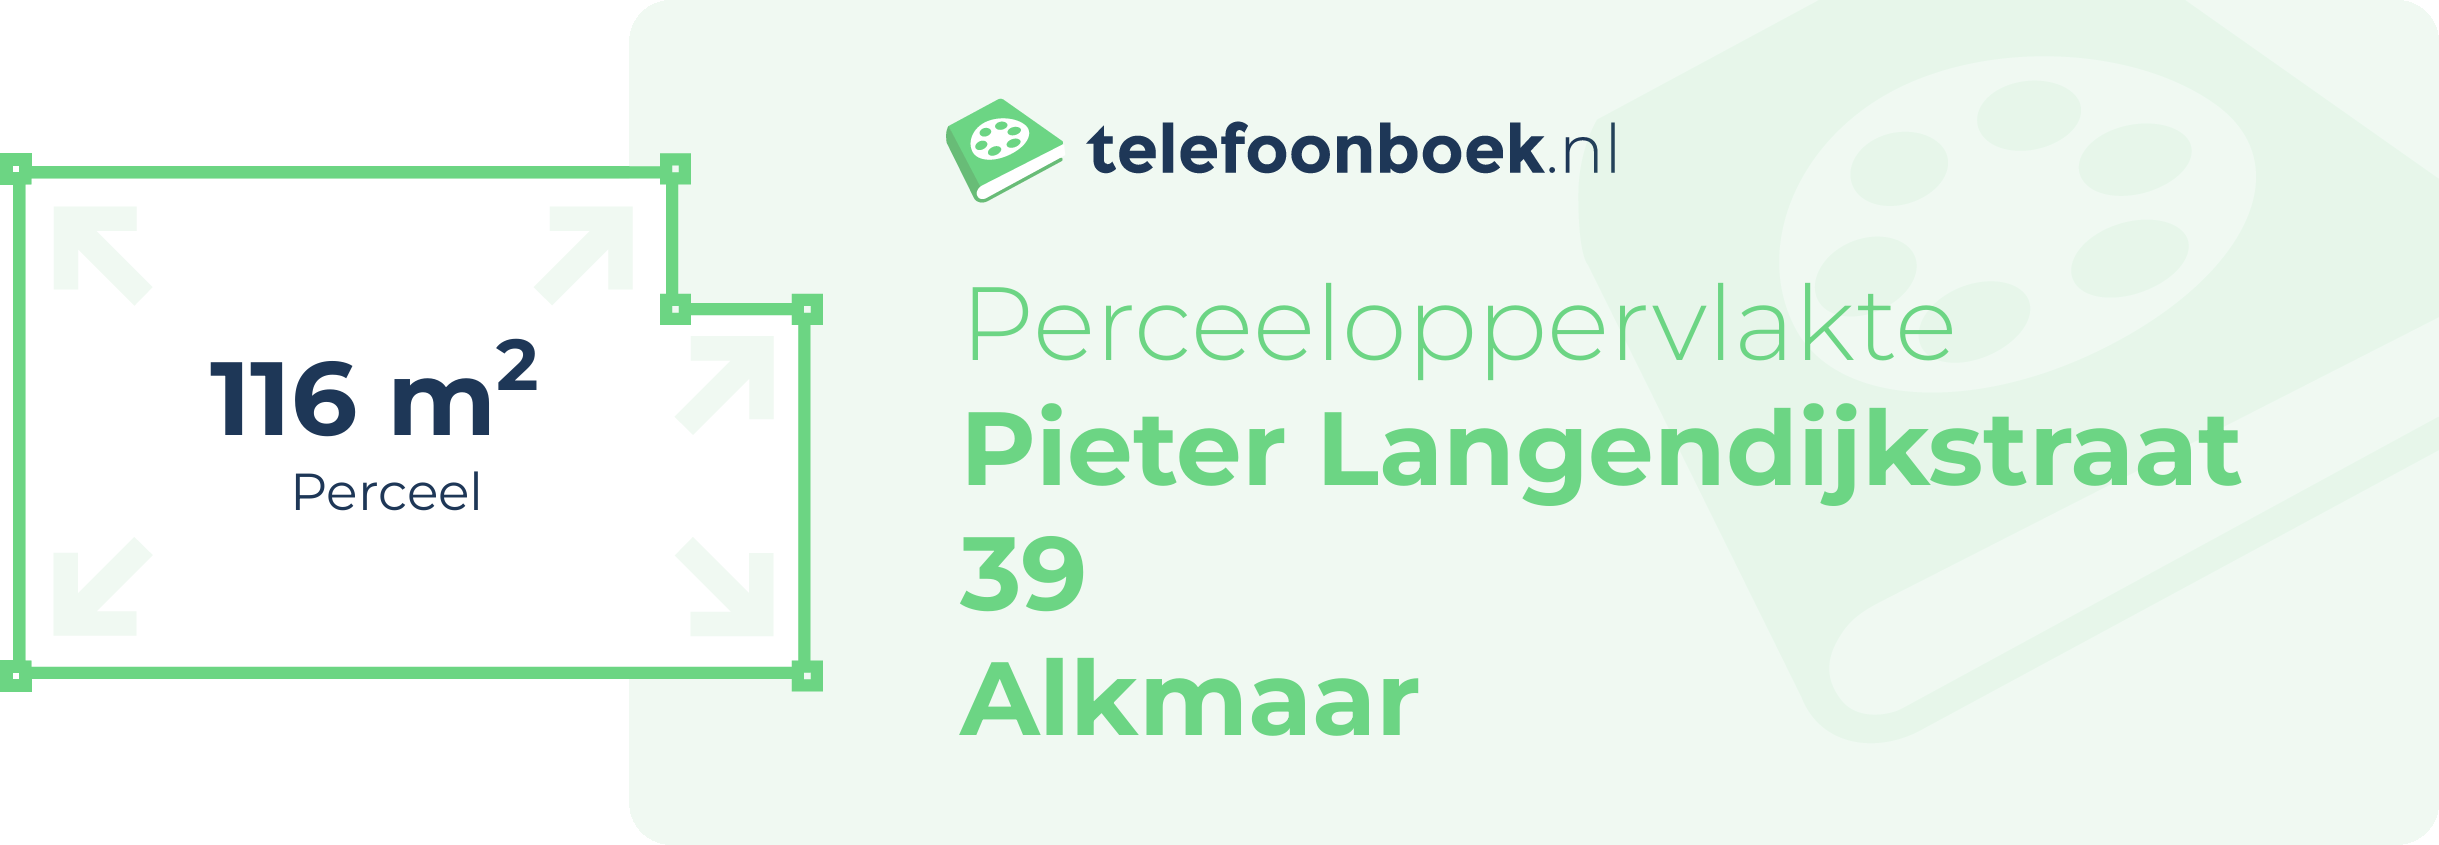 Perceeloppervlakte Pieter Langendijkstraat 39 Alkmaar